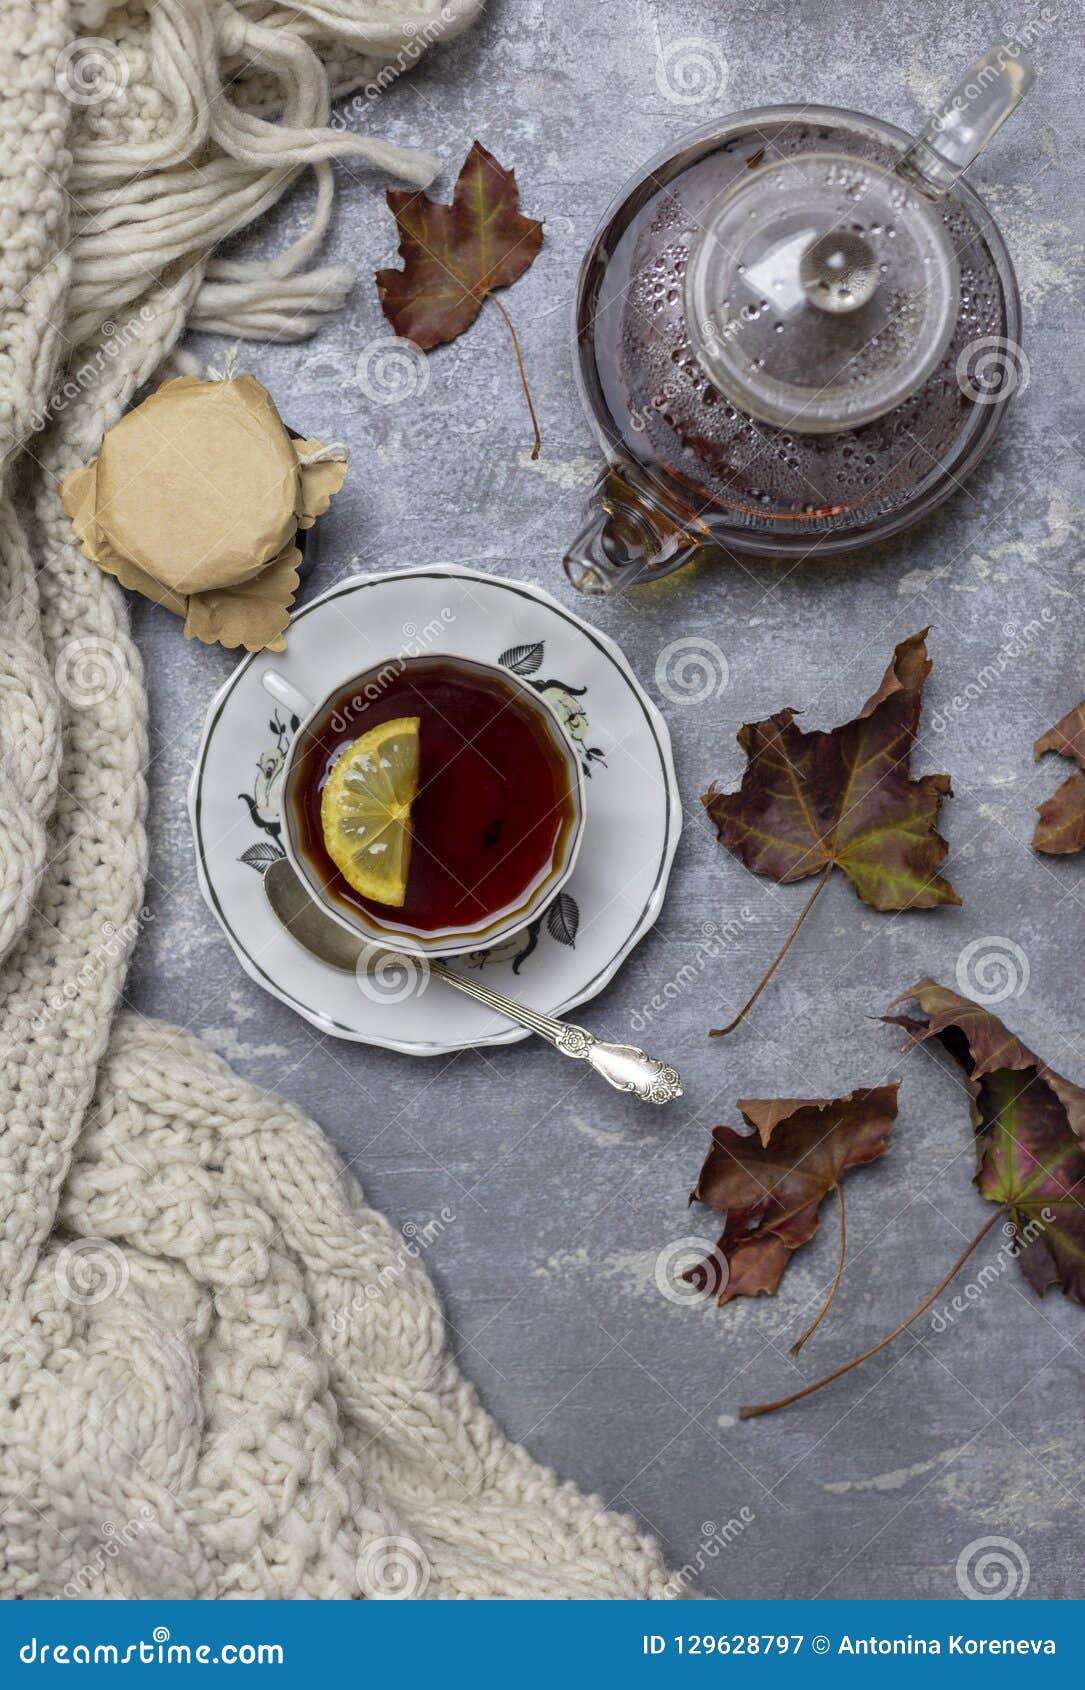 Composition en vie toujours et en concept Tasse avec le thé noir et le citron et la soucoupe, la cuillère, la gelée dans le pot, les feuilles d'érable et l'écharpe tricotée près, un fond gris